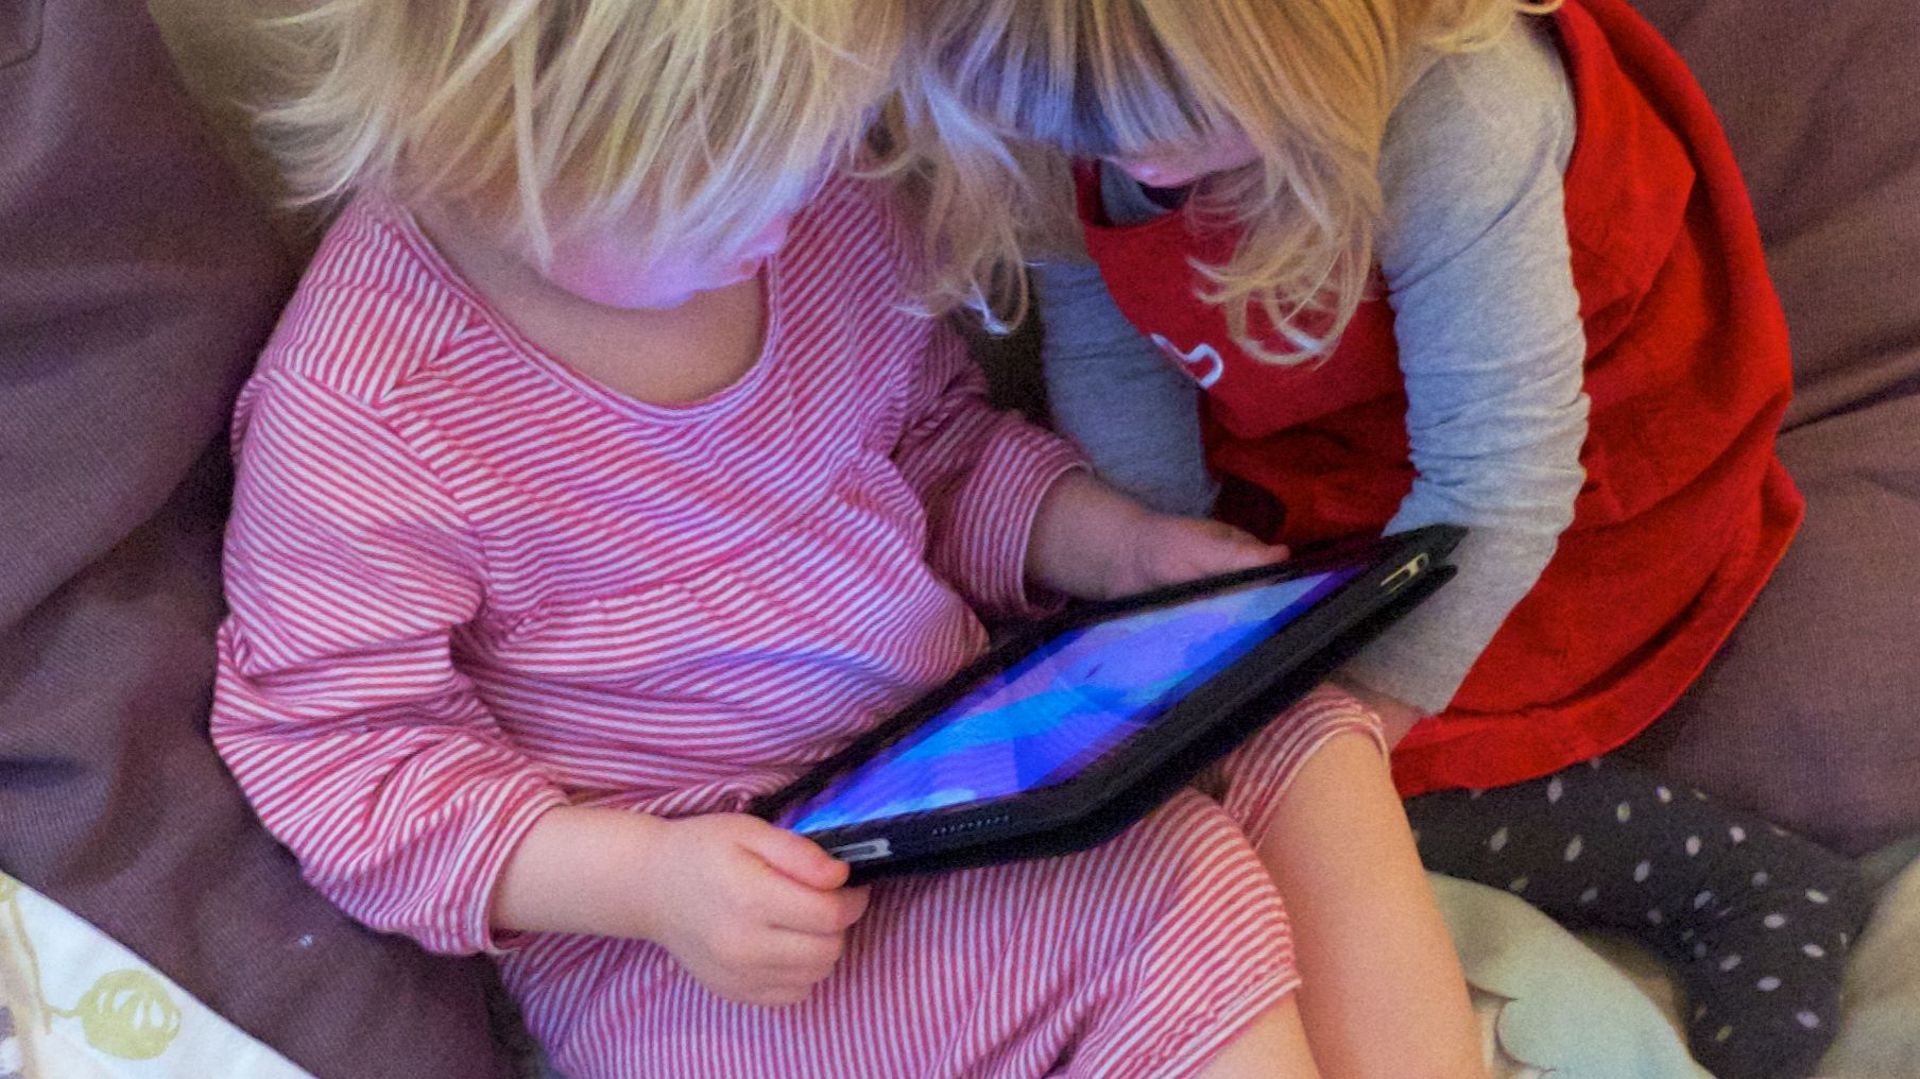 Les tablettes peuvent aider au développement de l'enfant, mais sous supervision et avec modération